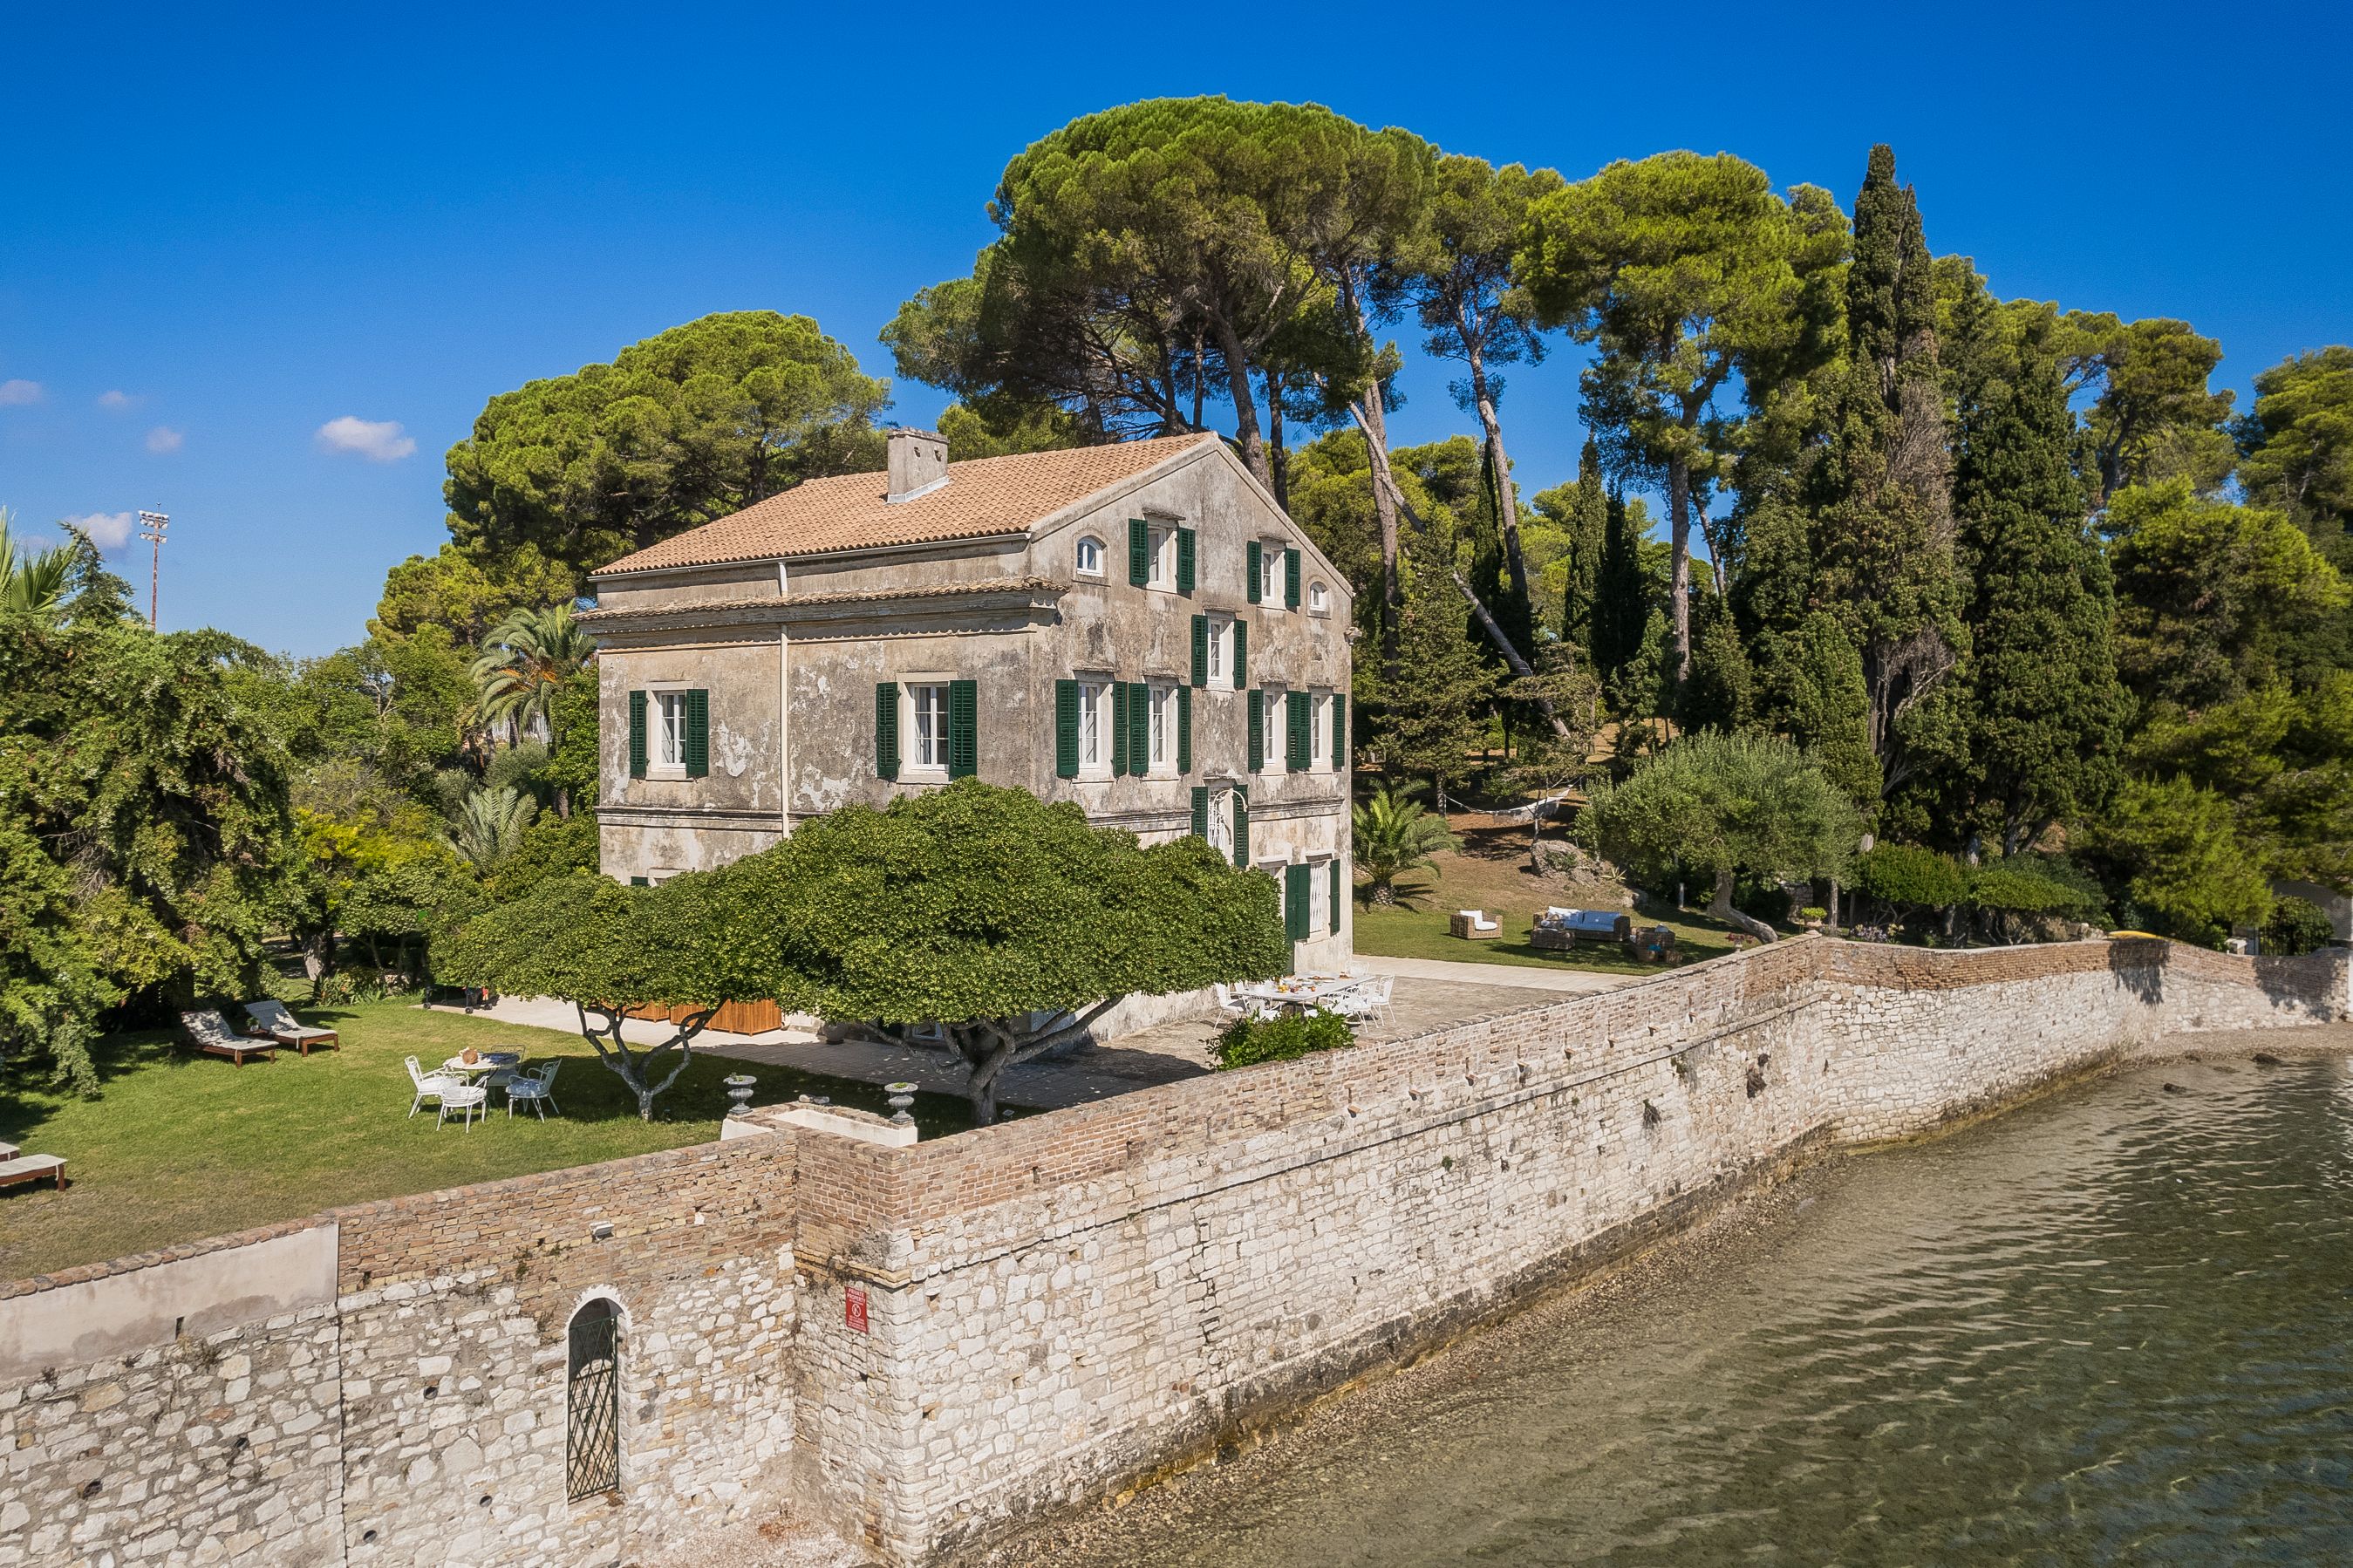 Aria Hotels acquires Villa Posillipo in Corfu